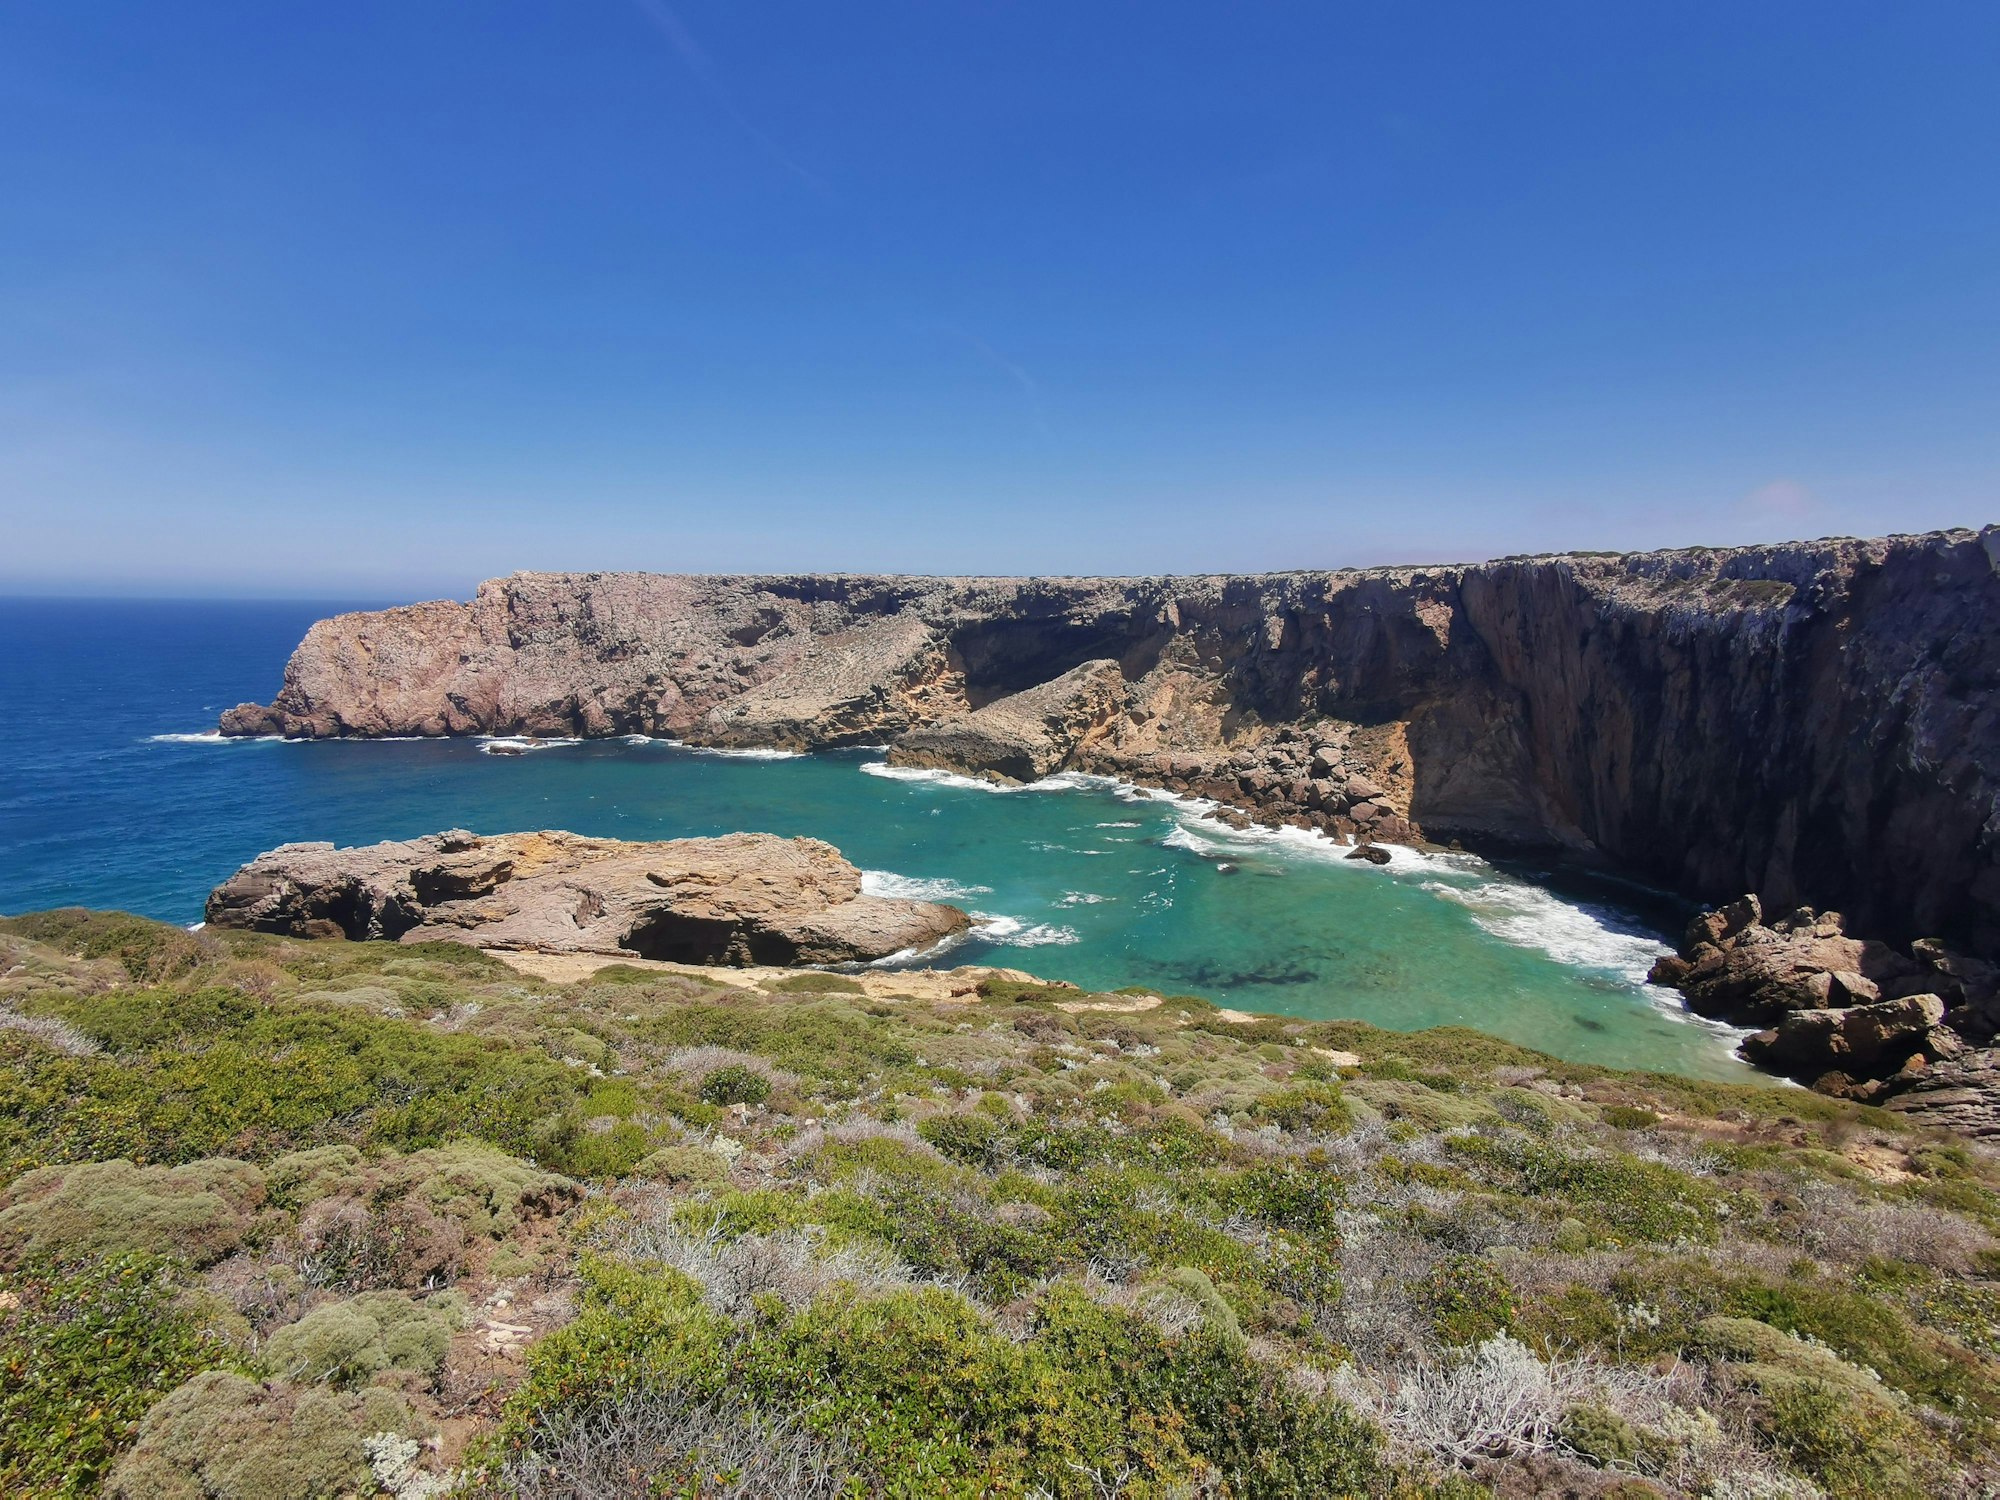 Diese malerische Bucht liegt unweit des Cabo de São Vicente ganz im Westen der Algarve.